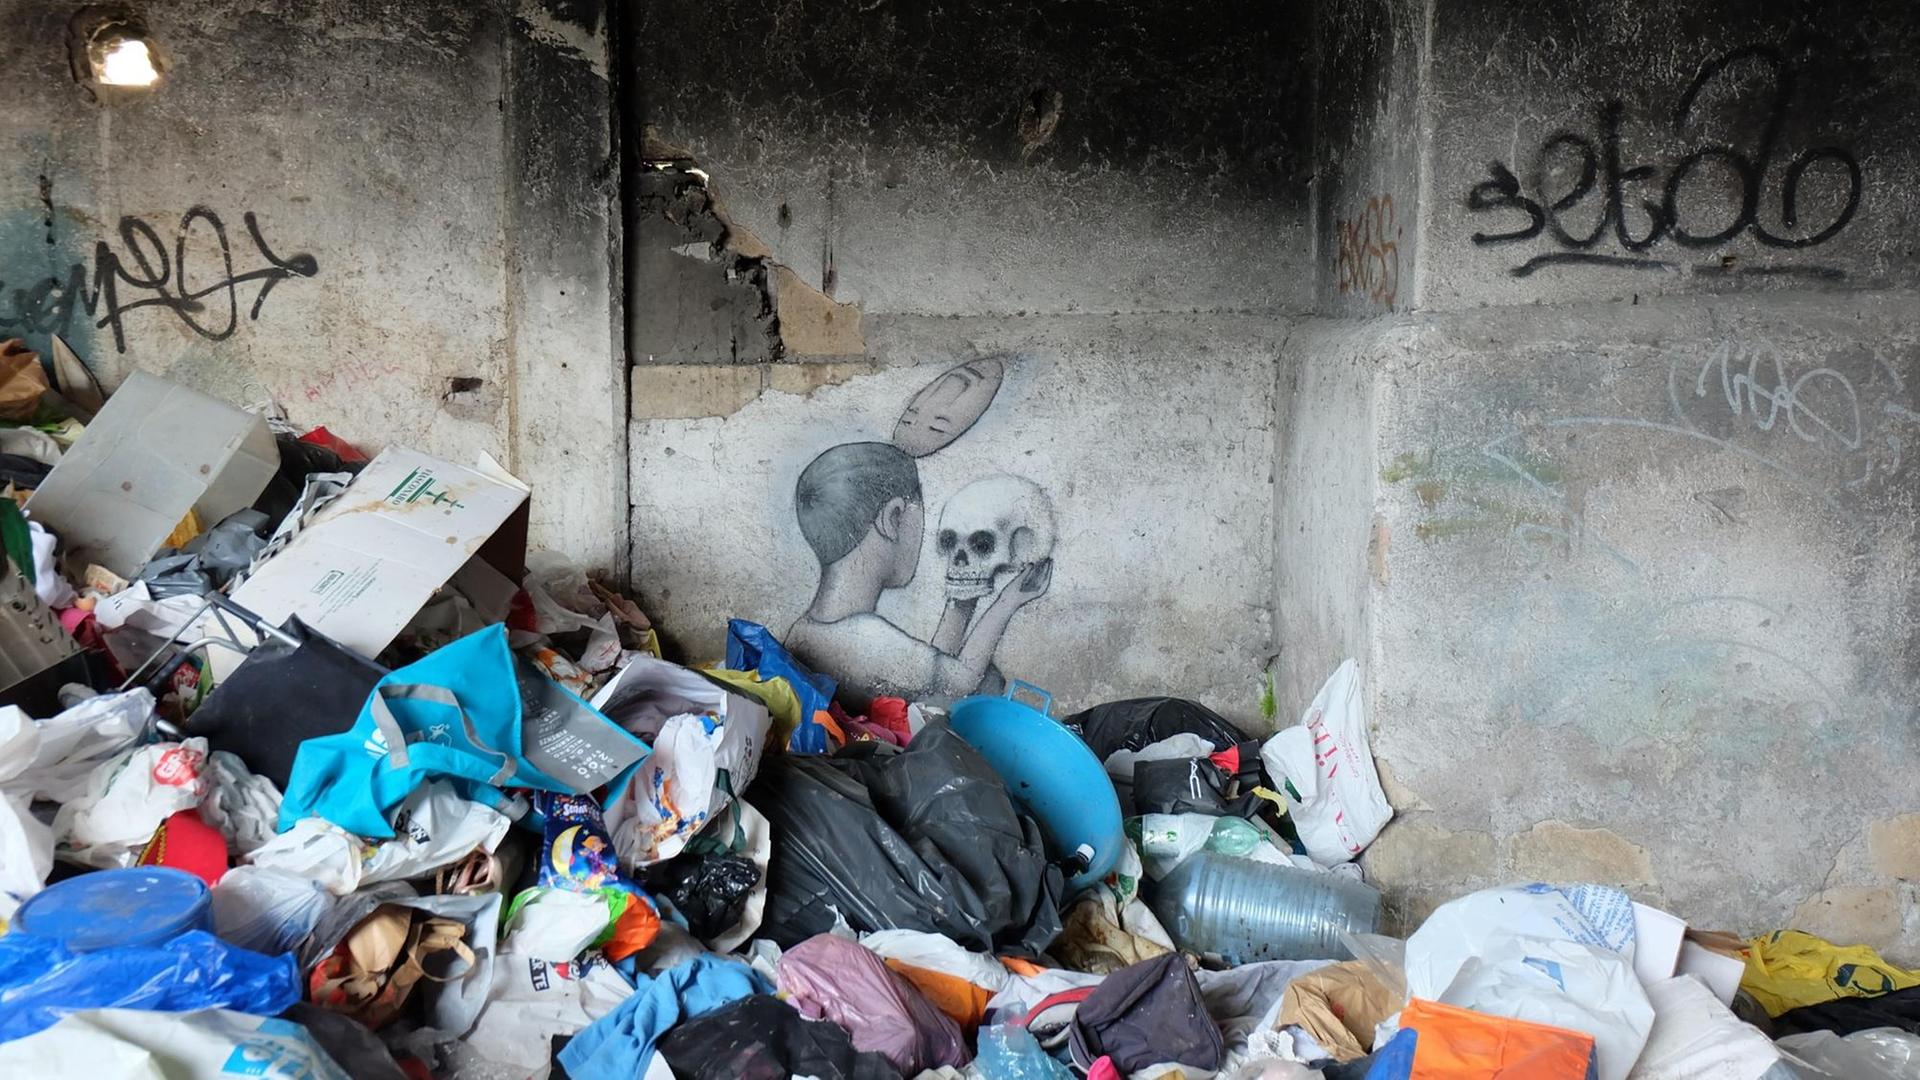 Ein Werk des französischen Street-Art-Künstlers Seth an einer Wand hinter Haufen von Müll auf dem Gelände einer besetzten früheren Seifenfabrik, dem Museo Abusivo Gestito dai Rom (MAGR) in Rom, zu sehen, aufgenommen im Juni 2019.